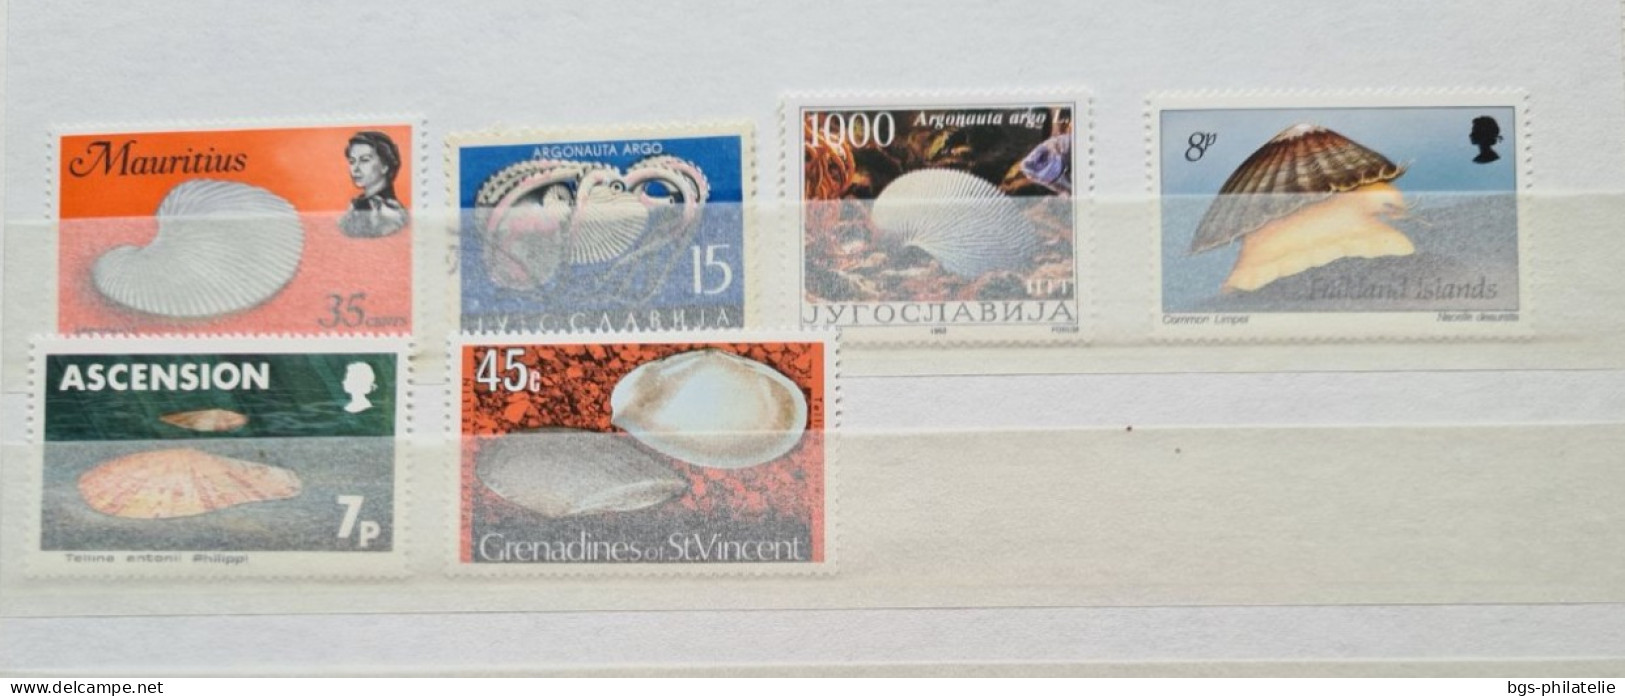 Collection de timbres sur le thème des COQUILLAGES.